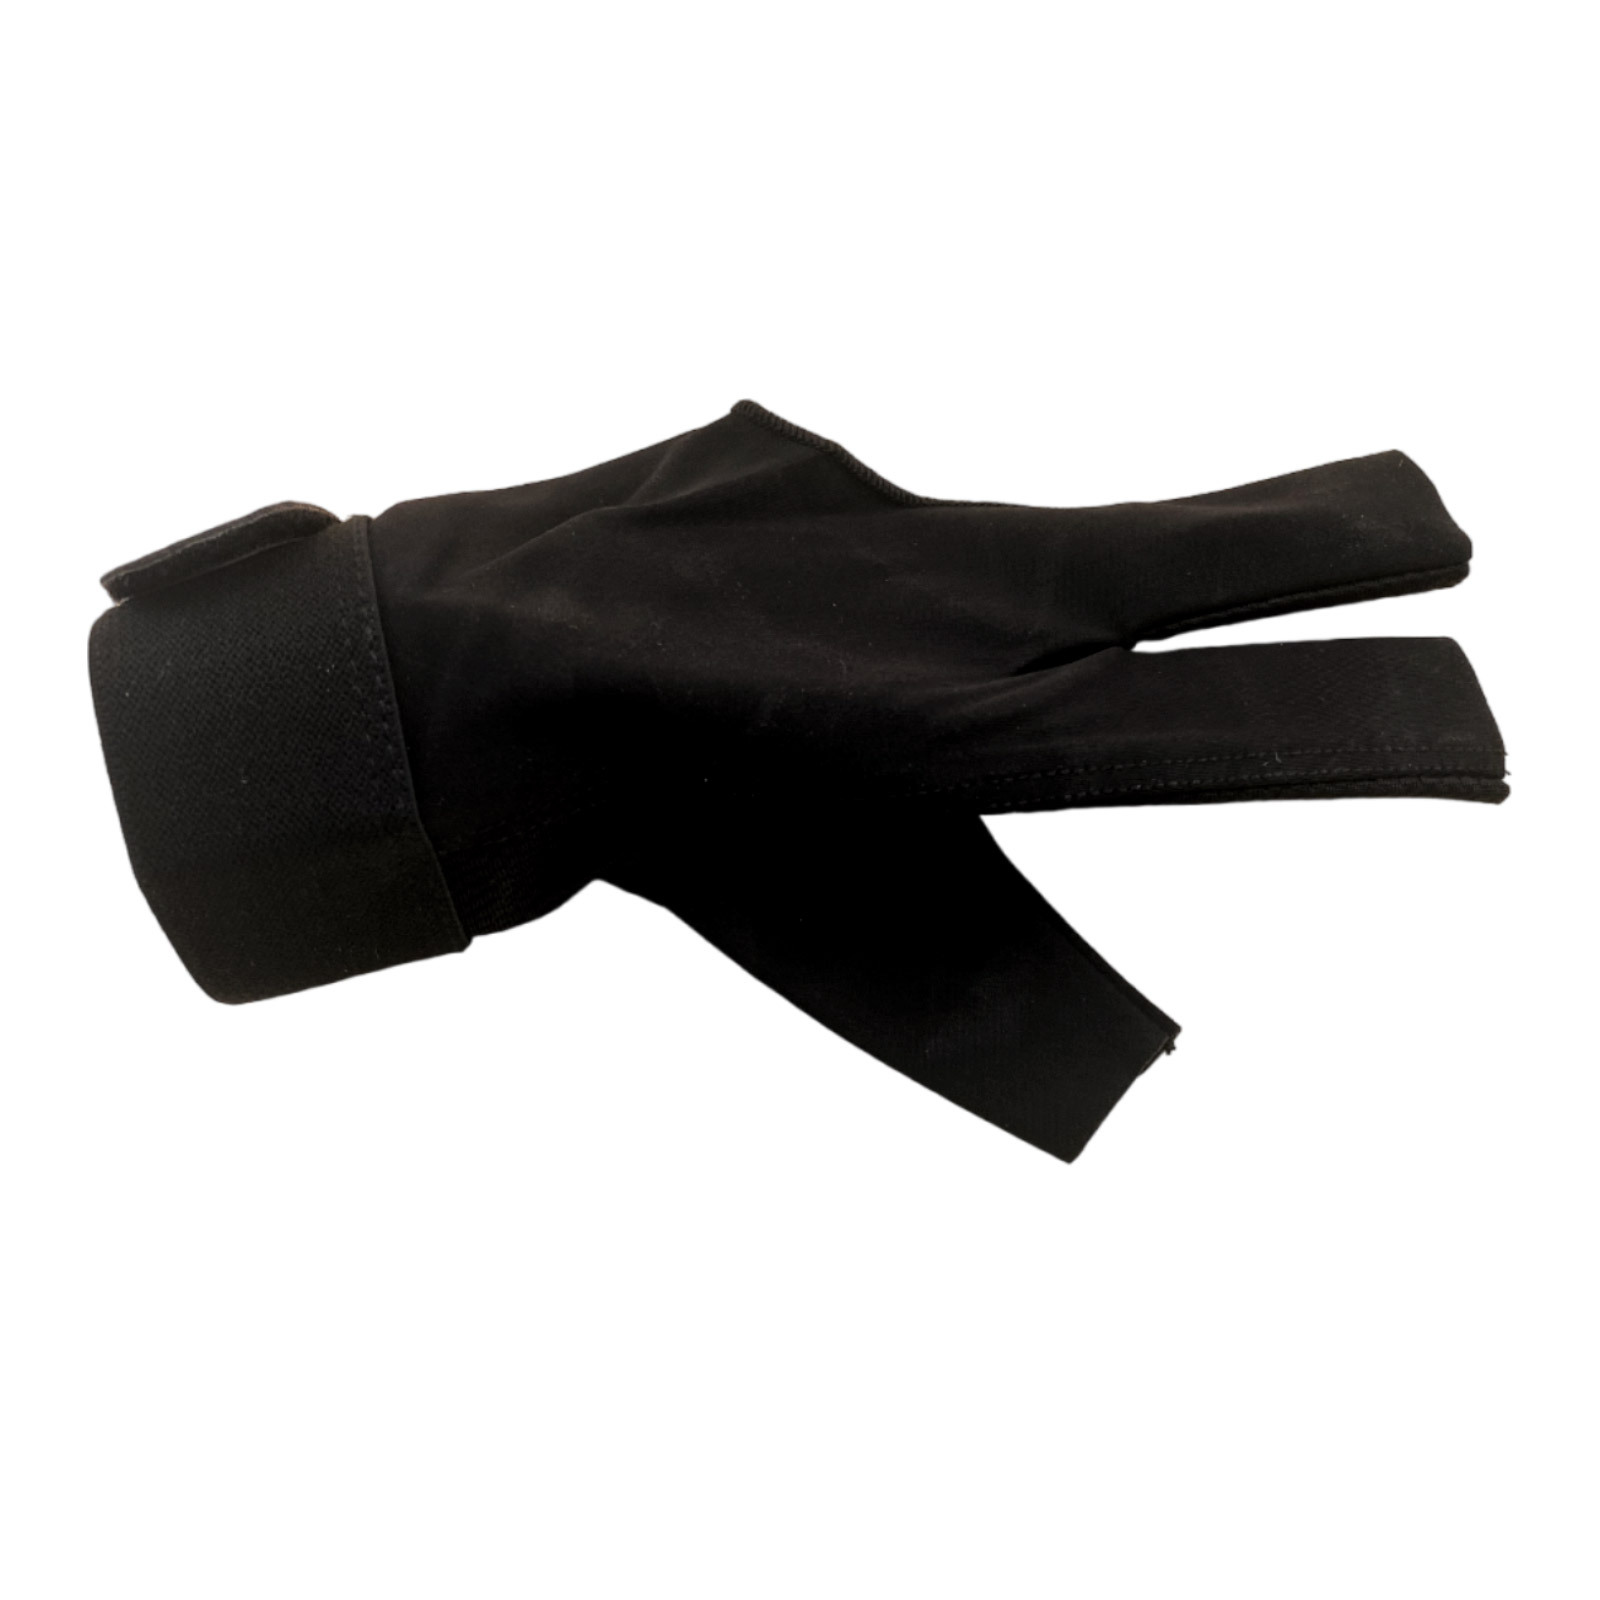 SPR GL Billiard Gloves - Black